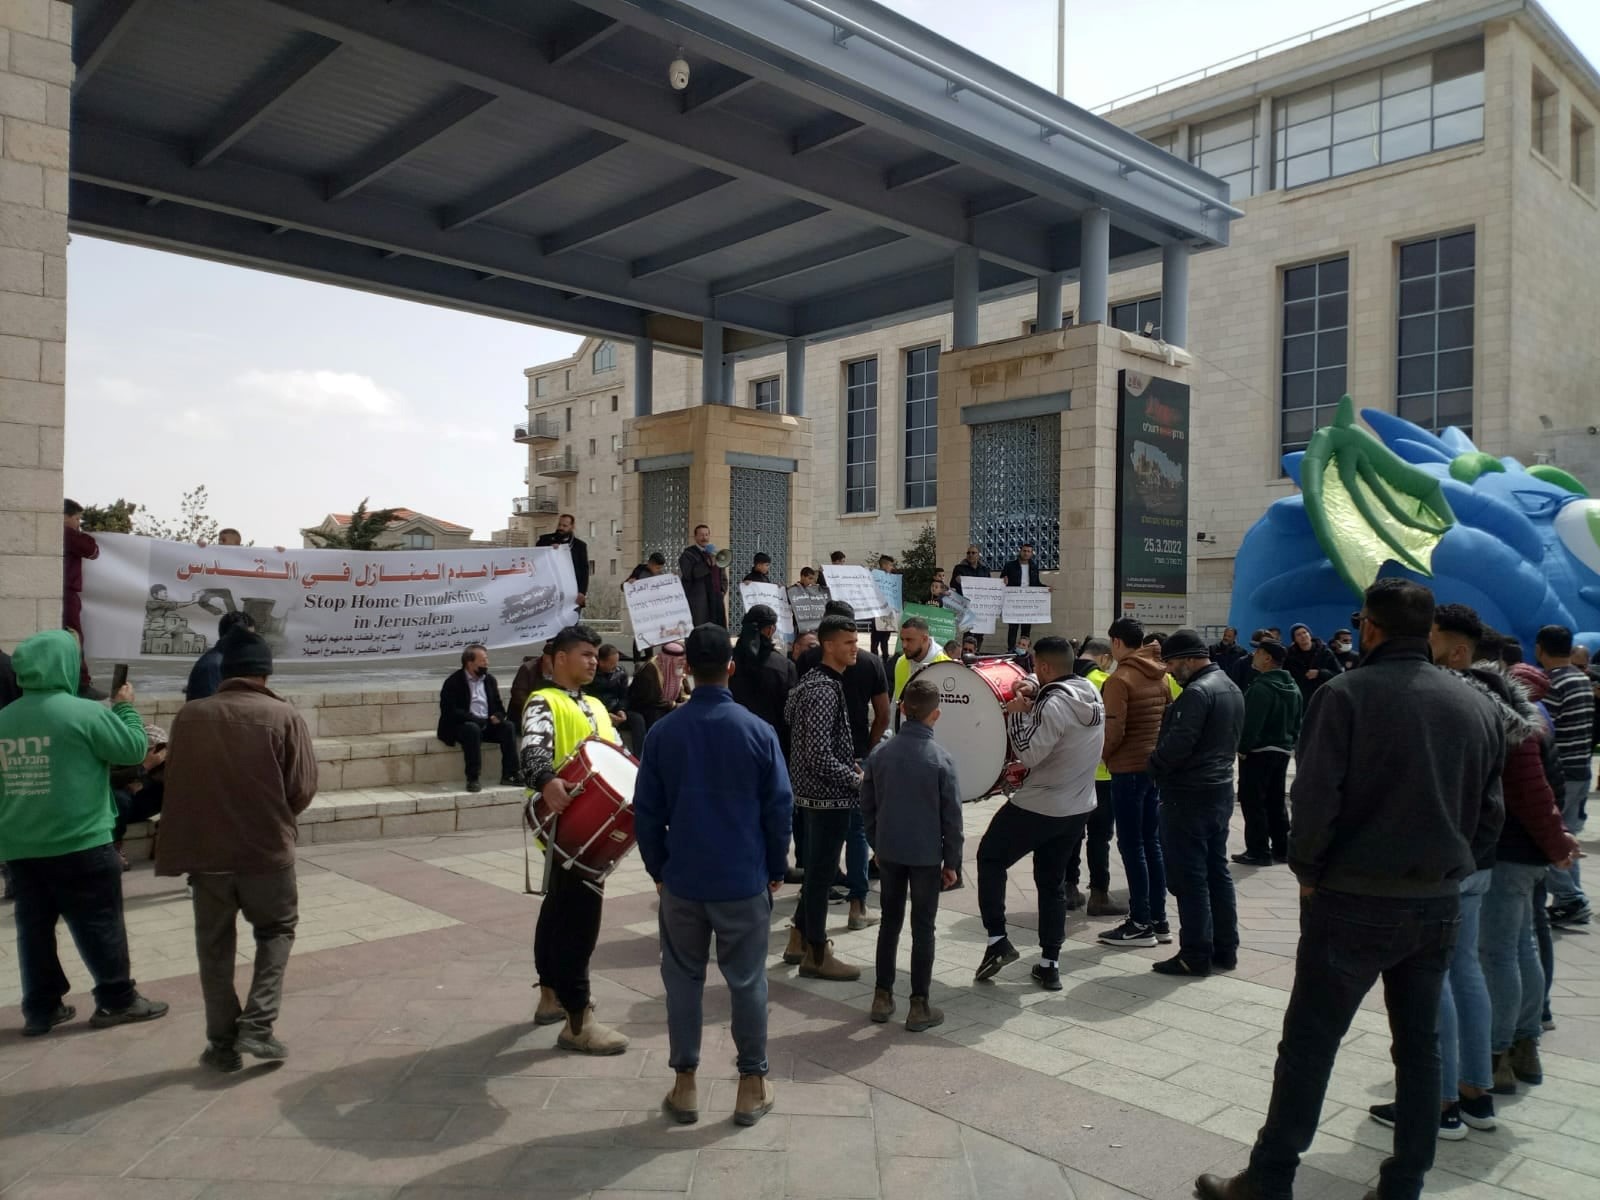 תושבי ג’בל מוכבר הפלסטינים הפגינו בכיכר ספרא נגד הריסות בתיהם בחסות עיריית י-ם